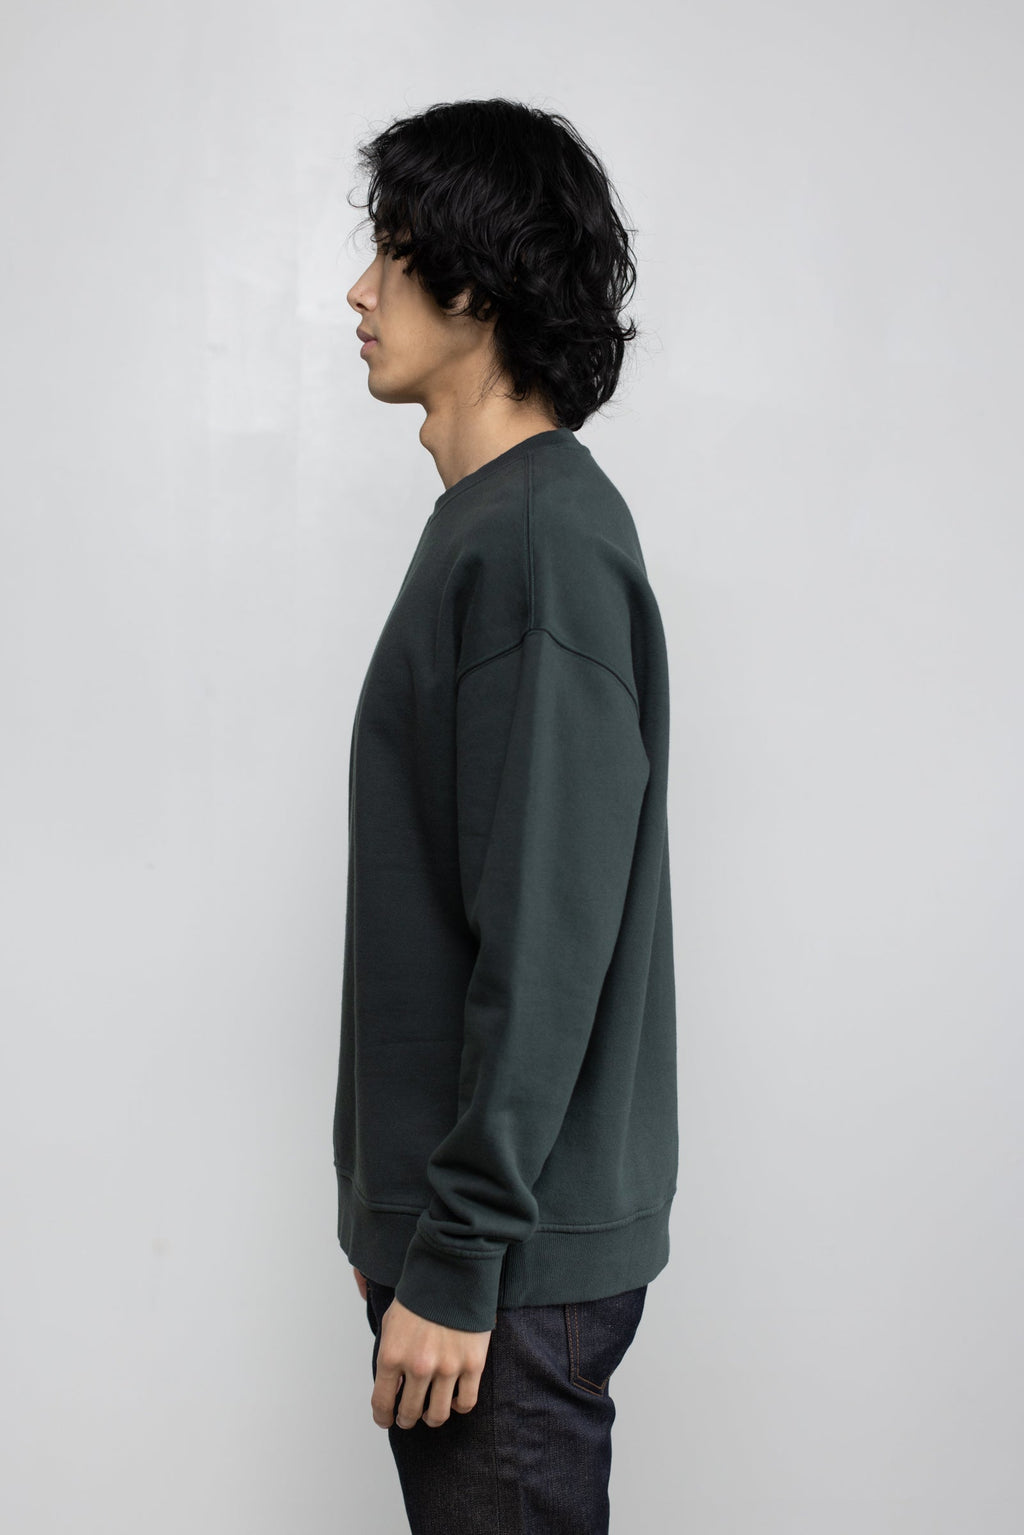 Cotton Fleece Sweatshirt in Hunter Green 04